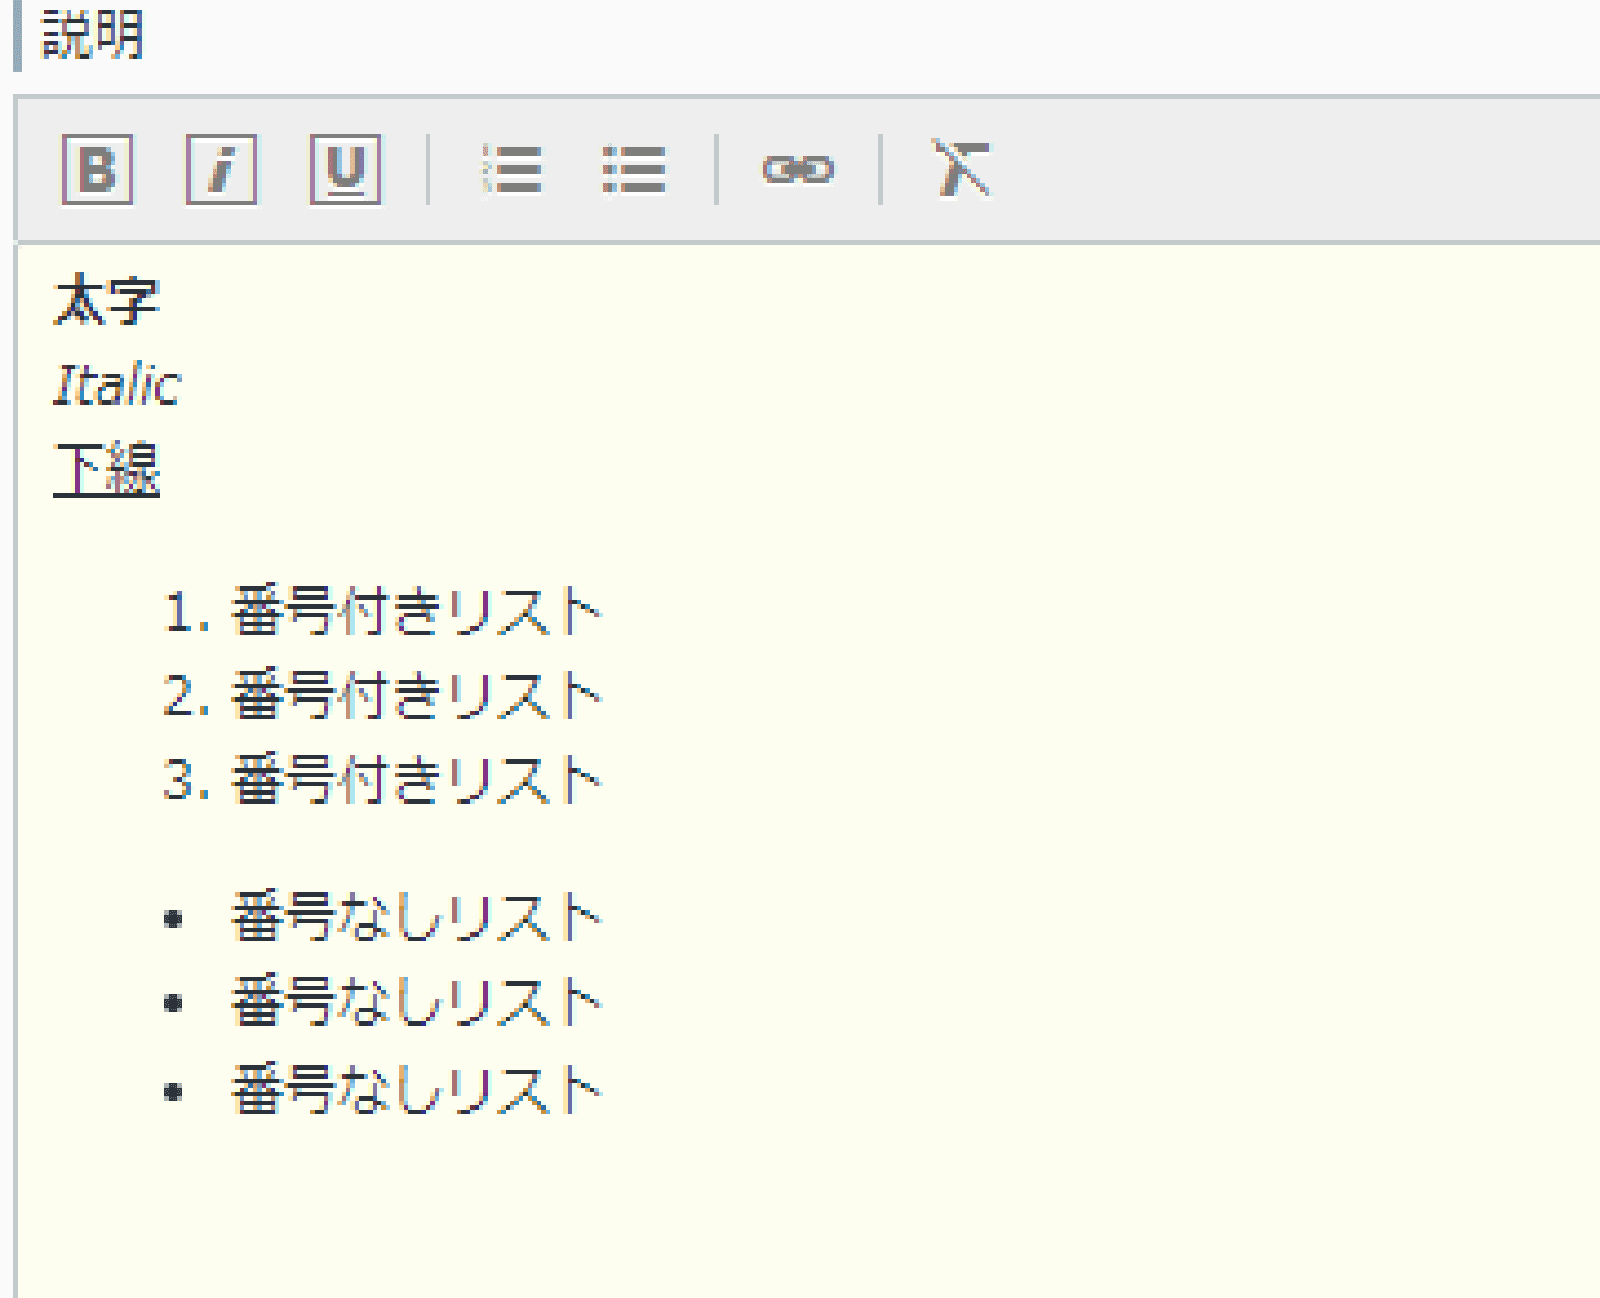 rakumo カレンダー 装飾したい文字を選んで設定が可能